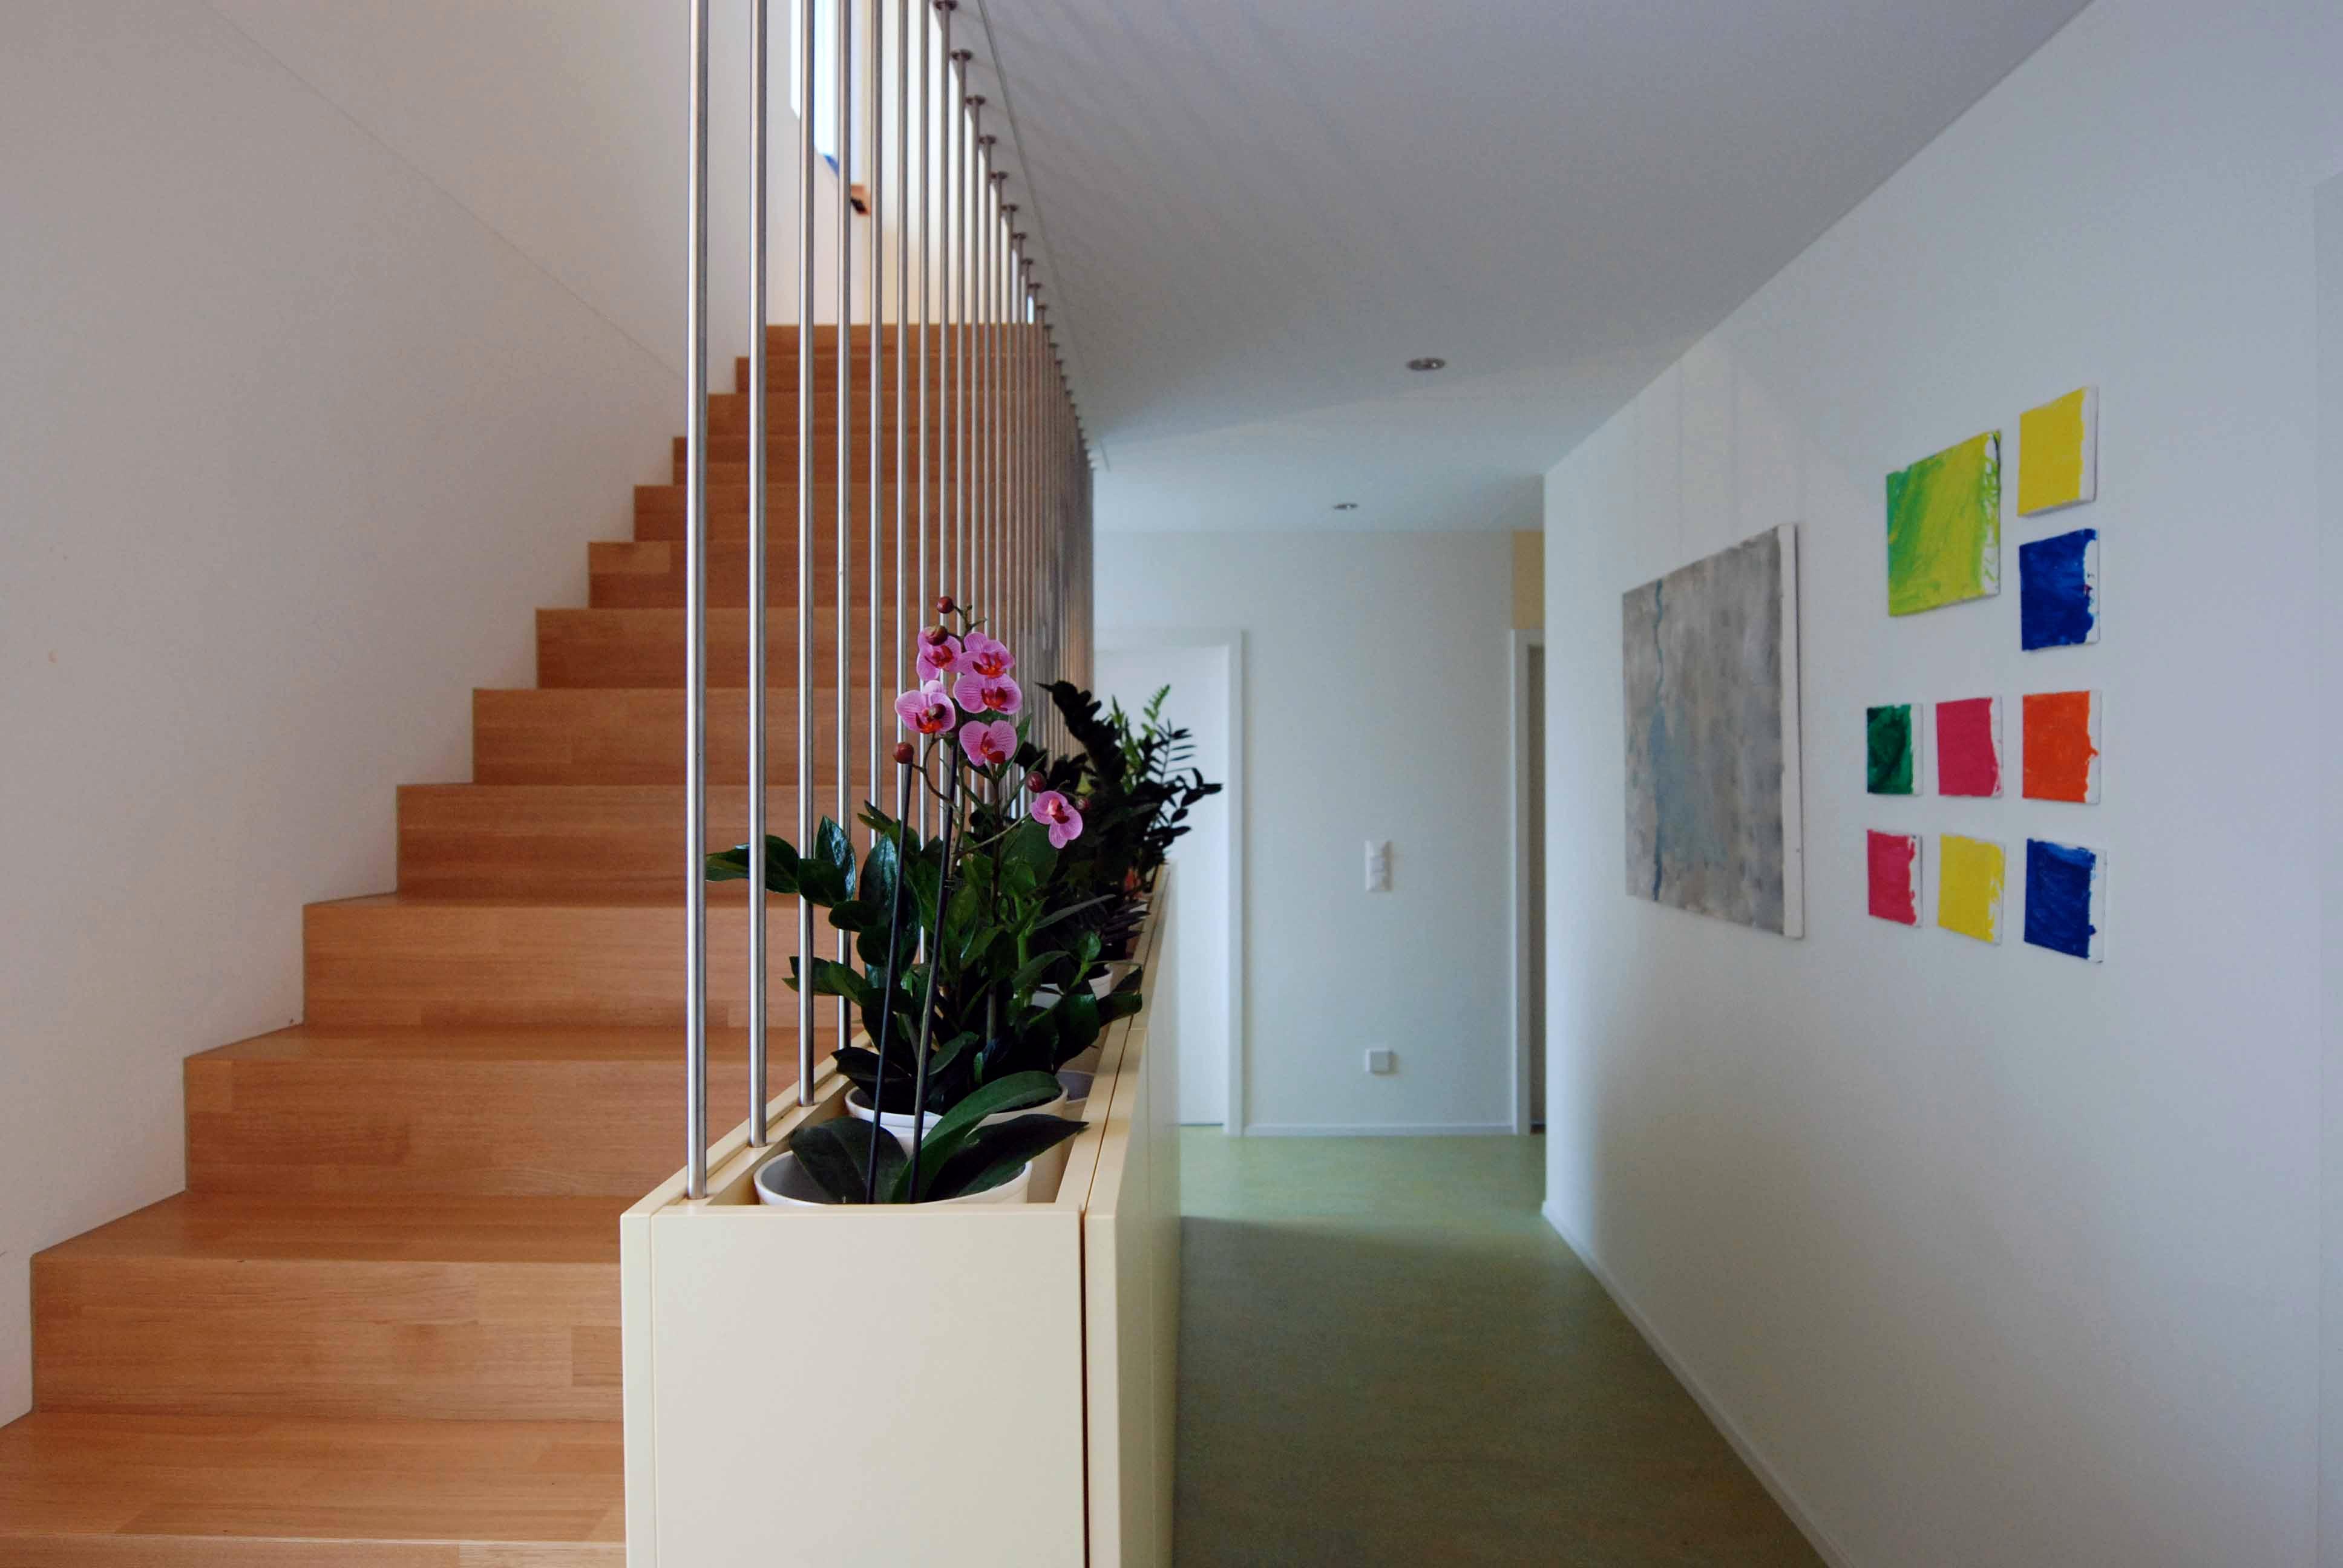 Architektur-Reportage Möriken Haus auf Mass: Boden aus grünem oder bräunlich-orangem Linoleum